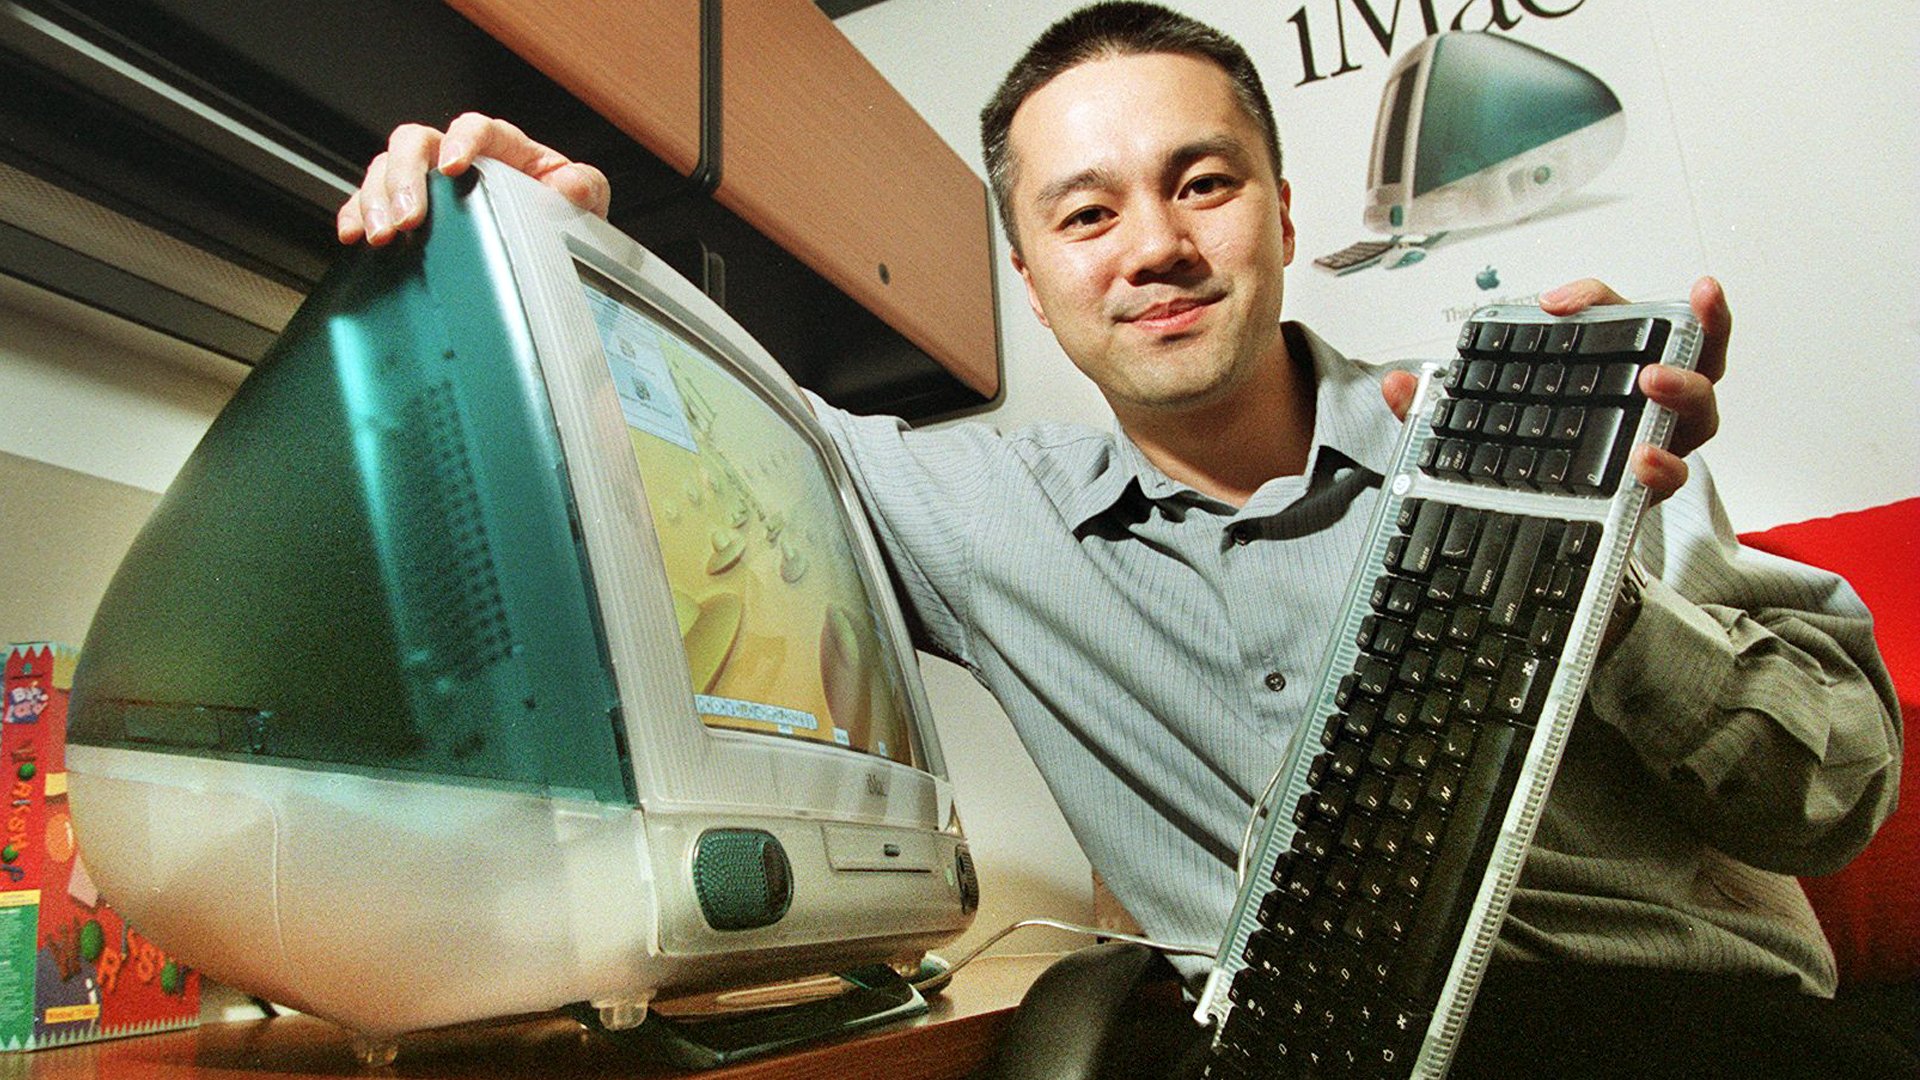 TONY LI, MARKETINGDIREKTOR VON APPLE HK, MIT DEM NEUEN IMAC-COMPUTER. (Foto von MARK RALSTON/South China Morning Post über Getty Images)